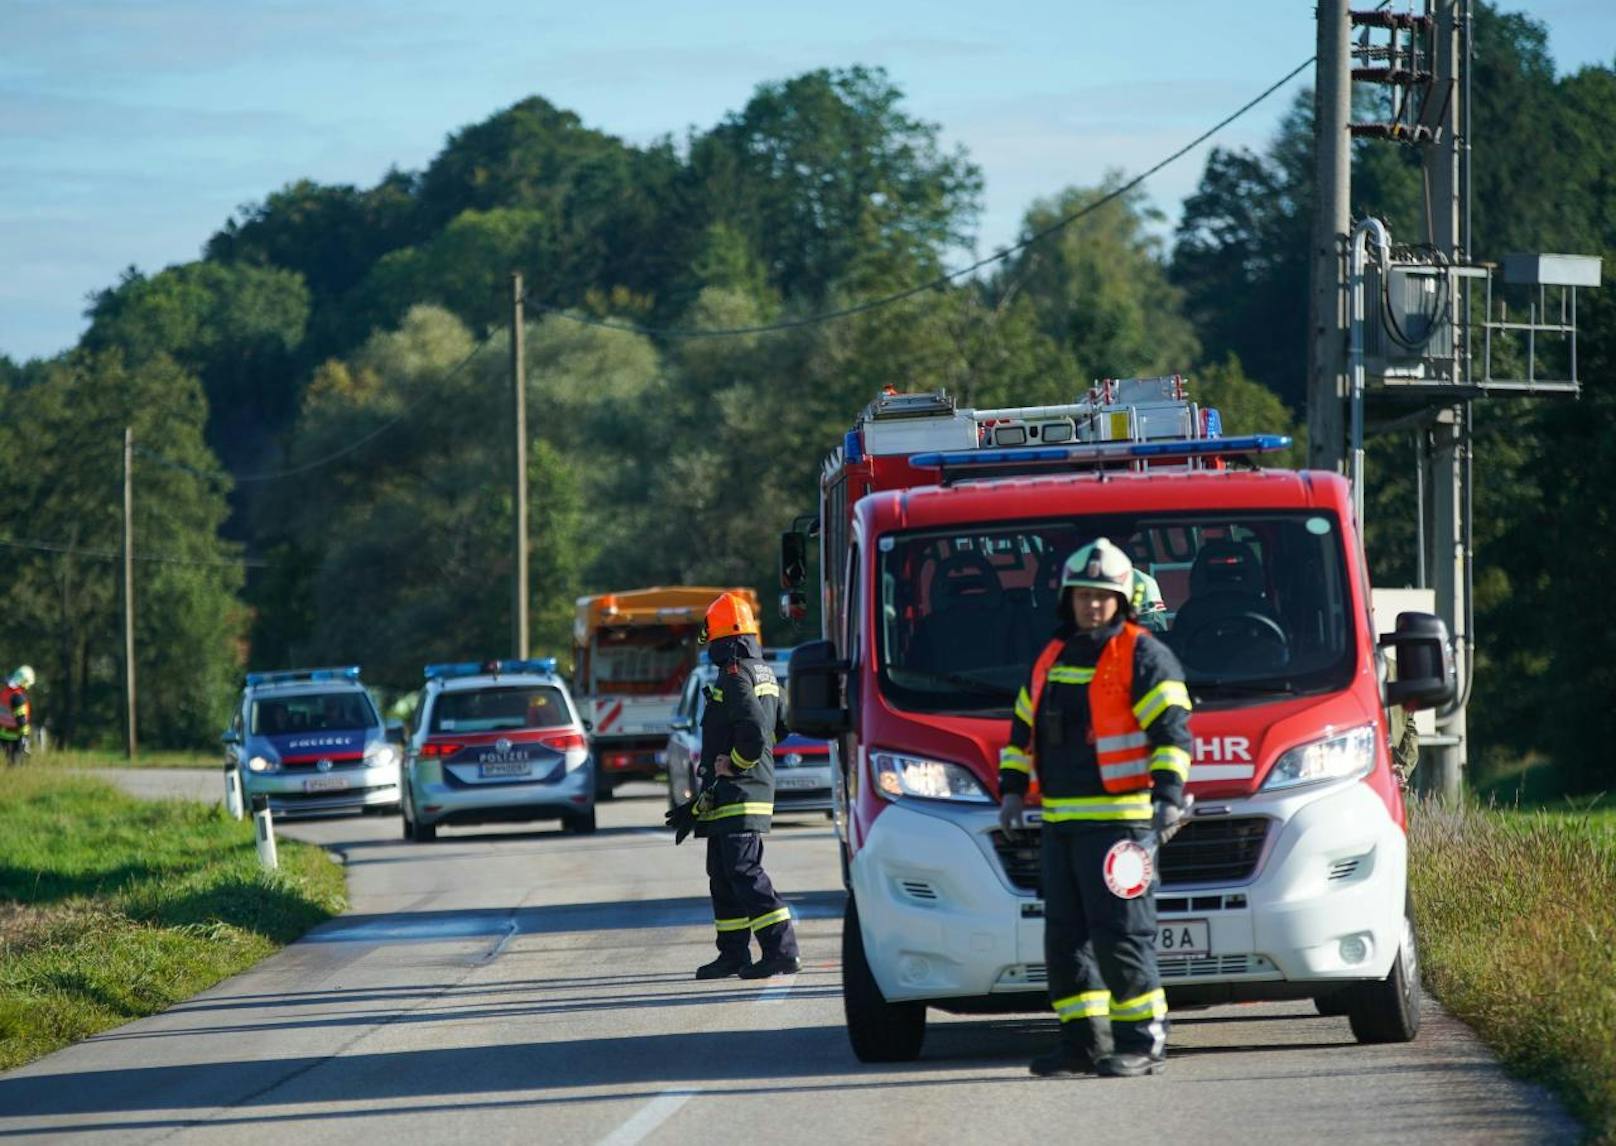 Unfall in Pischelsdorf: Das Motorrad ging in Flammen auf, der Biker aus dem Bez. Braunau starb.